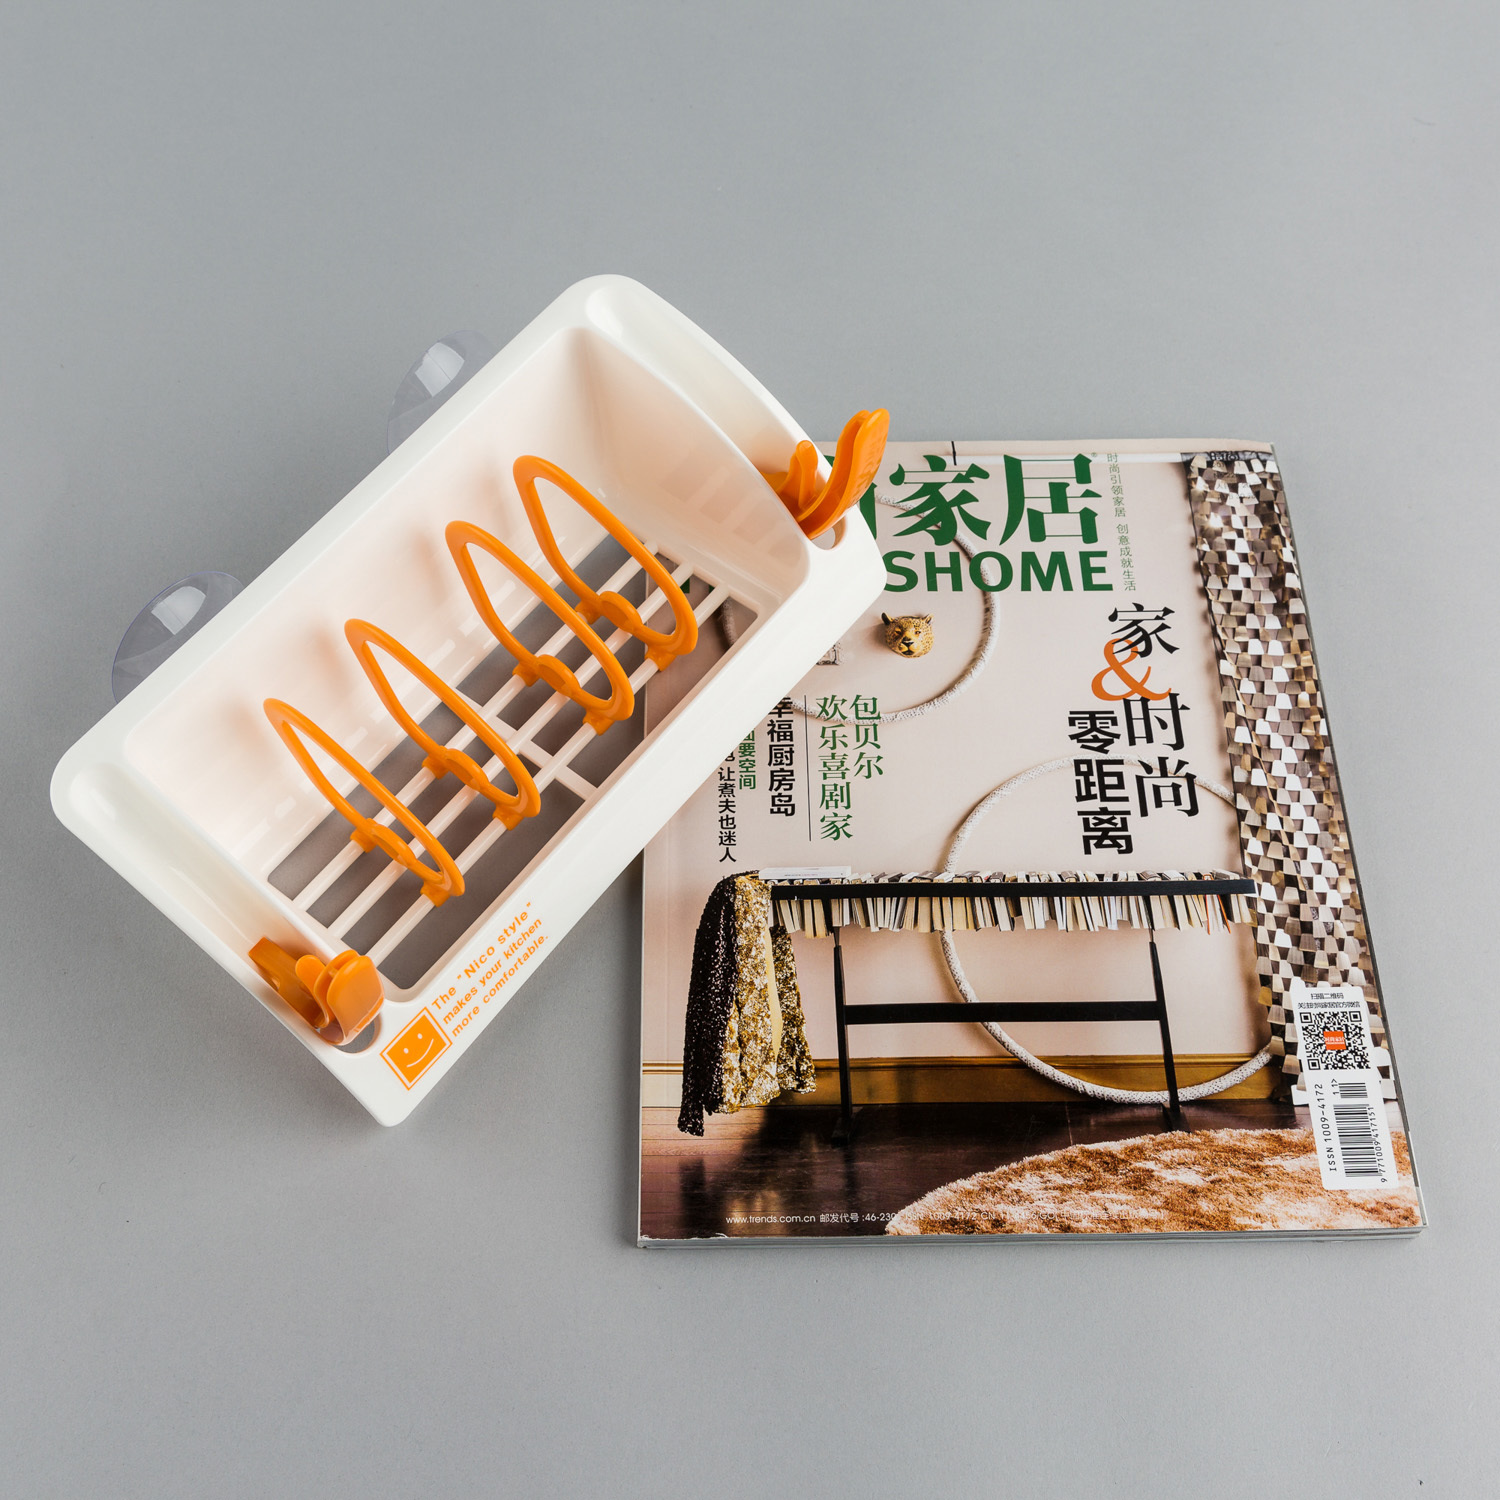 日本原产inomata吸取式沥水架收纳架置物架带吸盘 白色